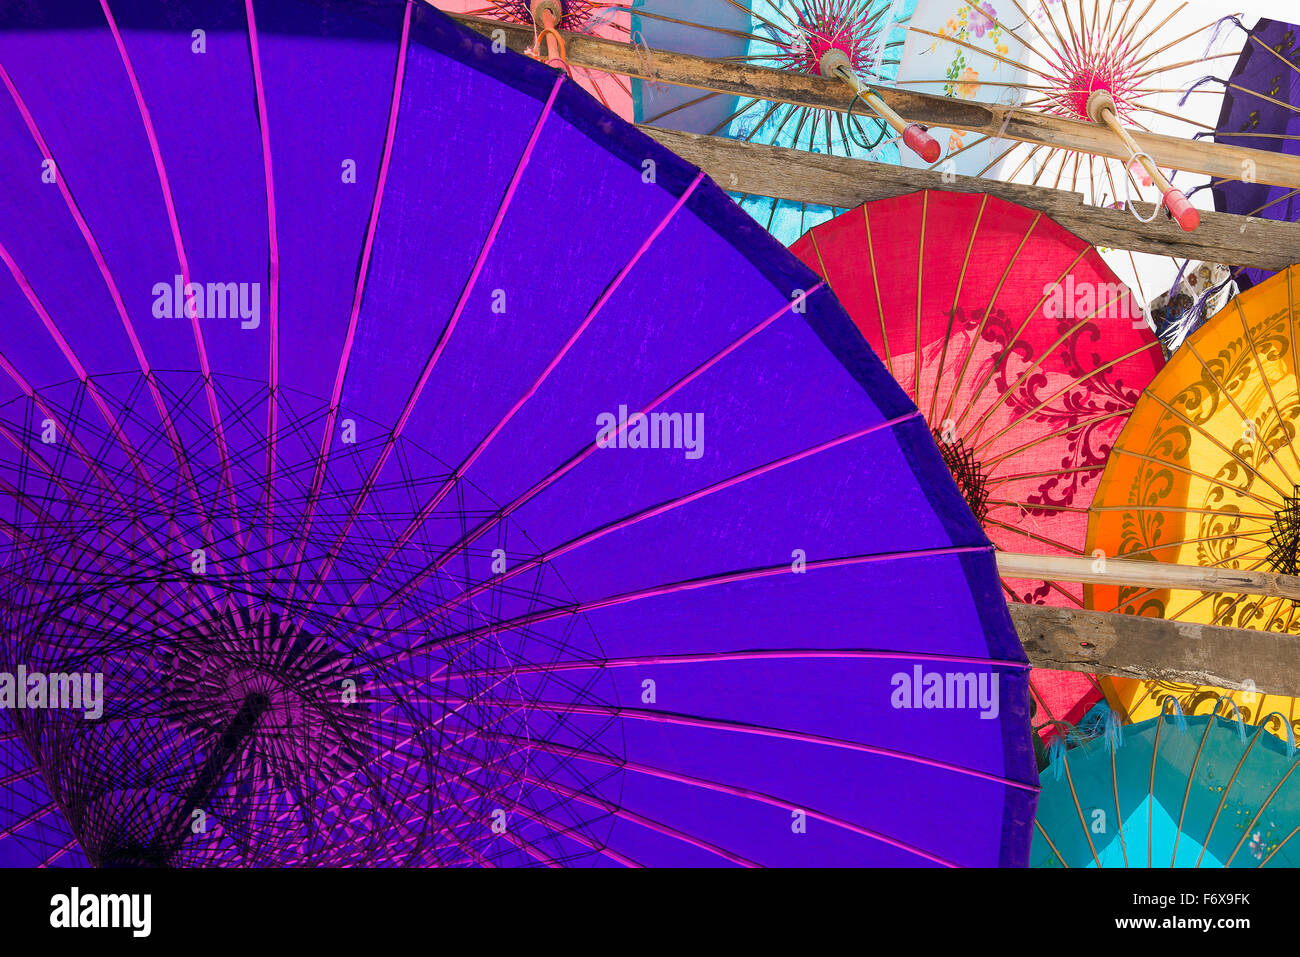 Buntes Papier Sonnenschirme auf dem Display; Yangon, Myanmar Stockfoto